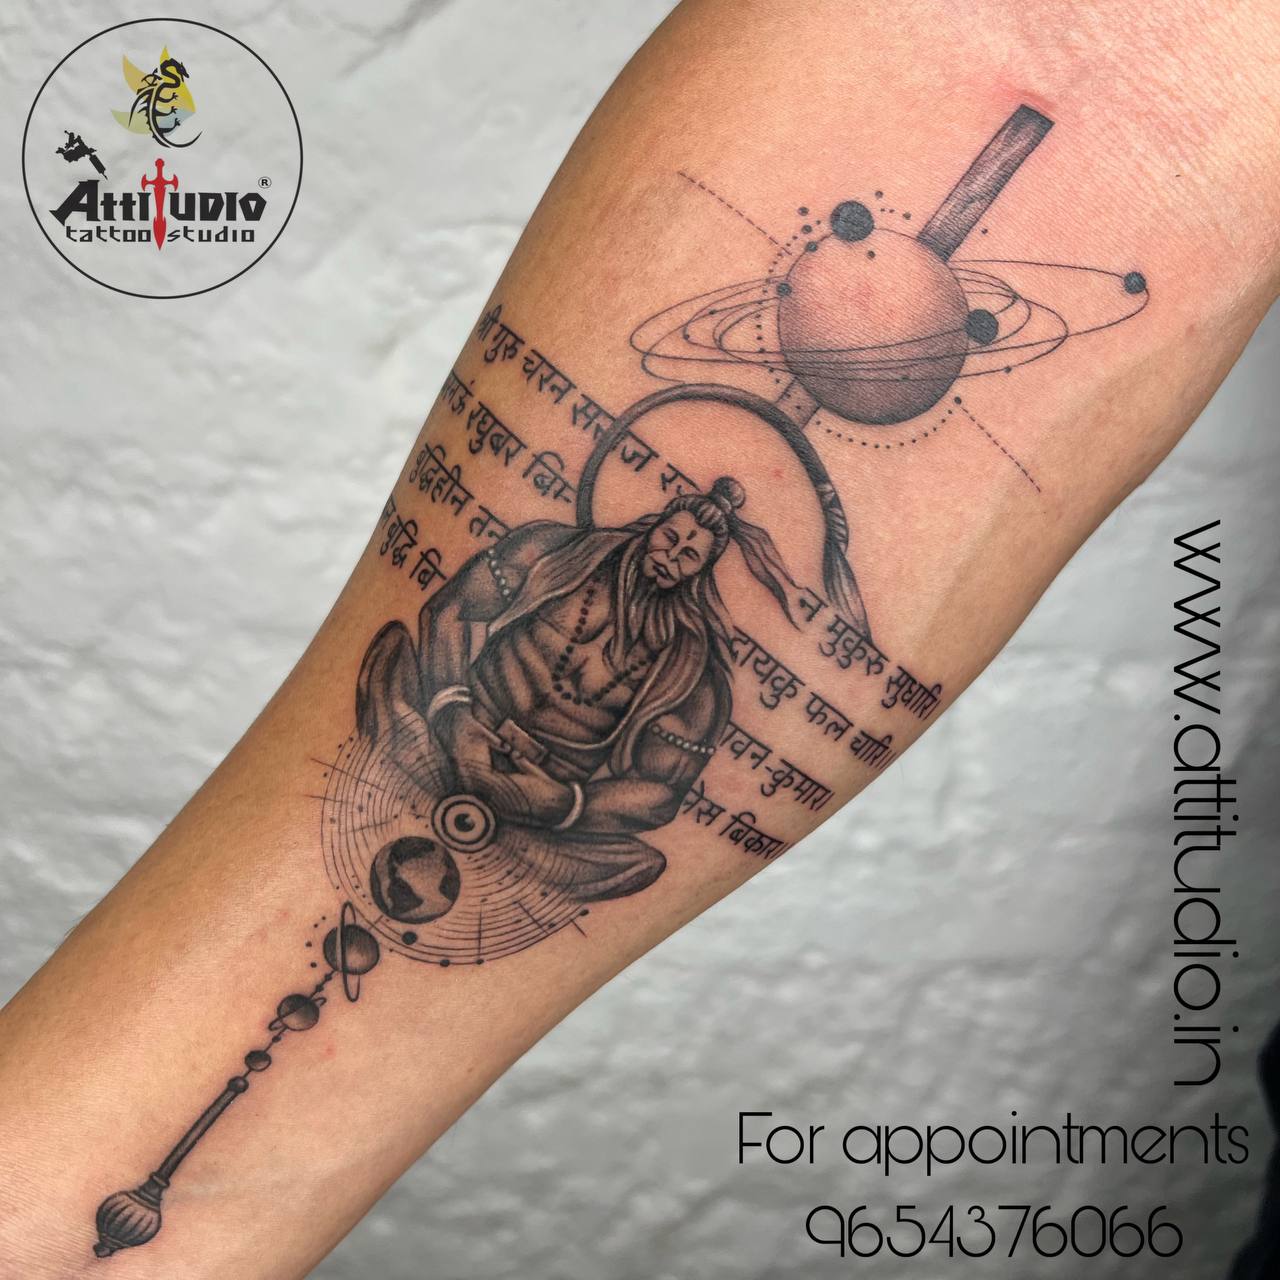 Tattoo uploaded by Vipul Chaudhary • hanuman dada tattoo |Hanuman tattoo  |Bajrangbali tattoo |Hanuman ji nu tattoo • Tattoodo